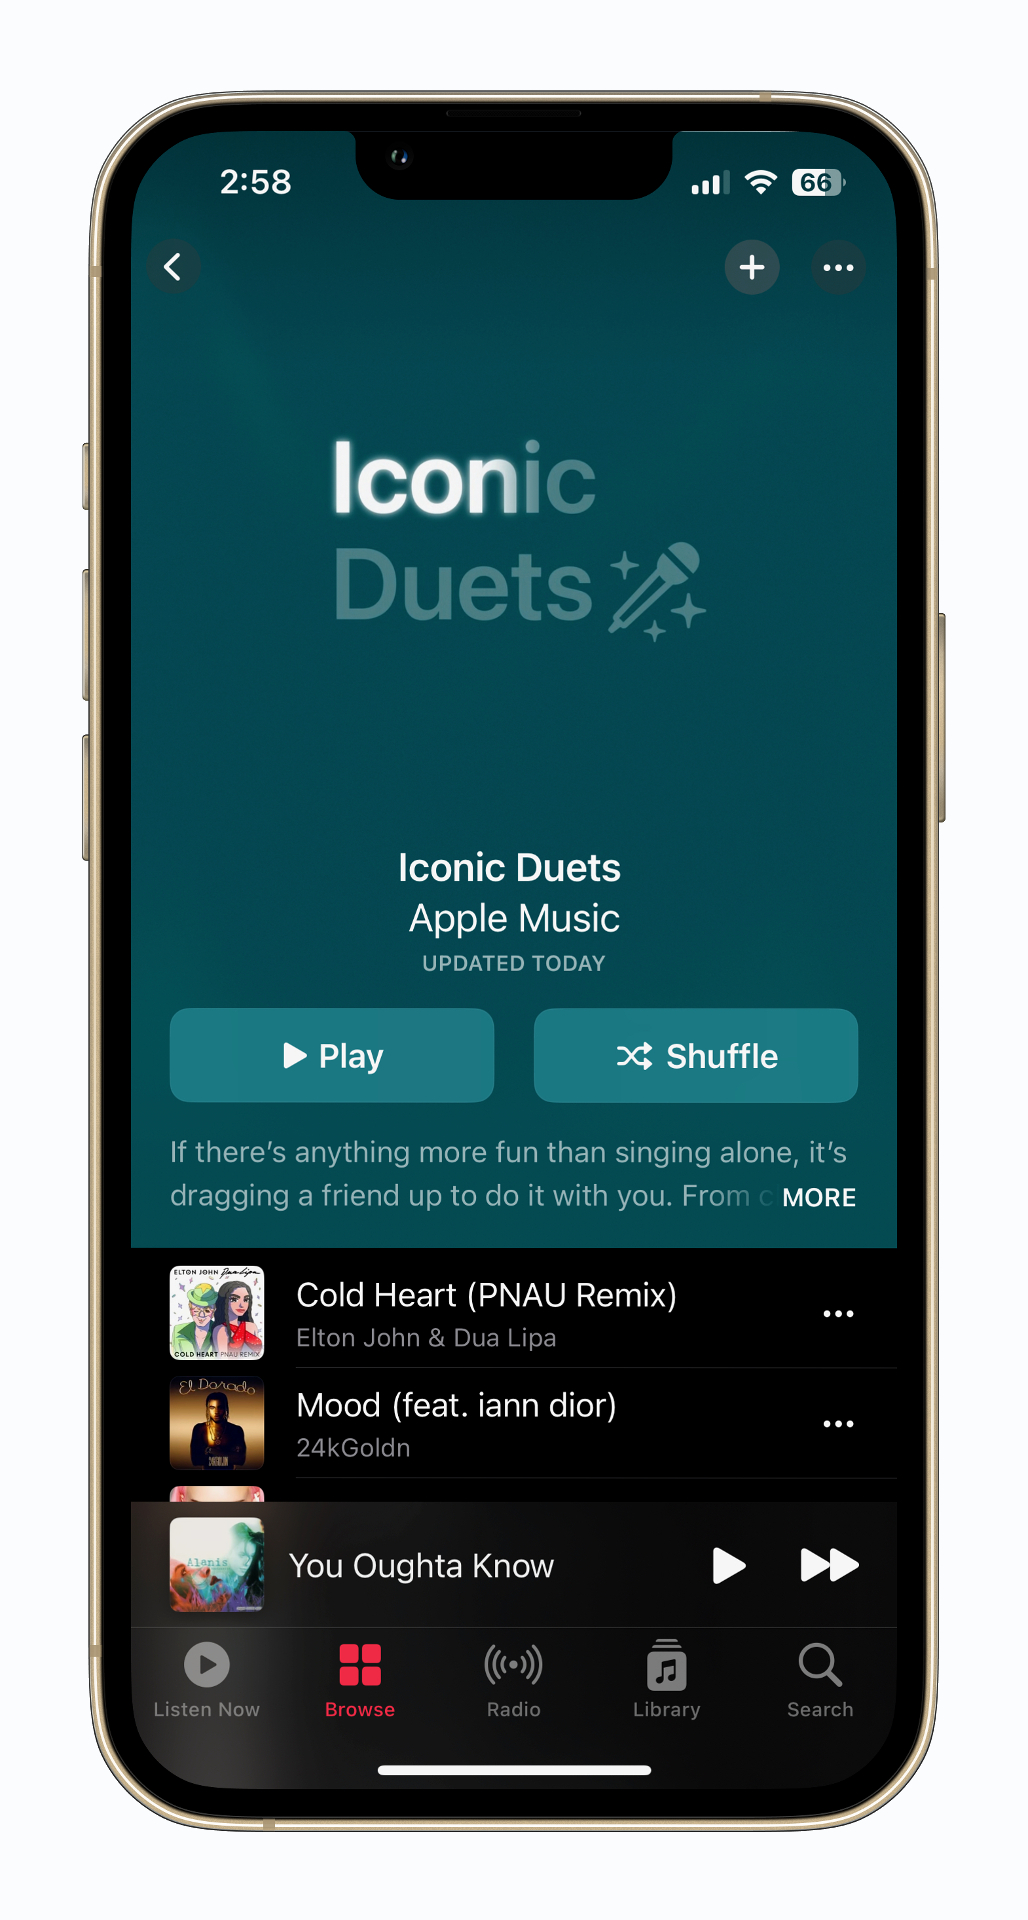 Apple Music آهنگ «دوئت های نمادین» را می خواند.